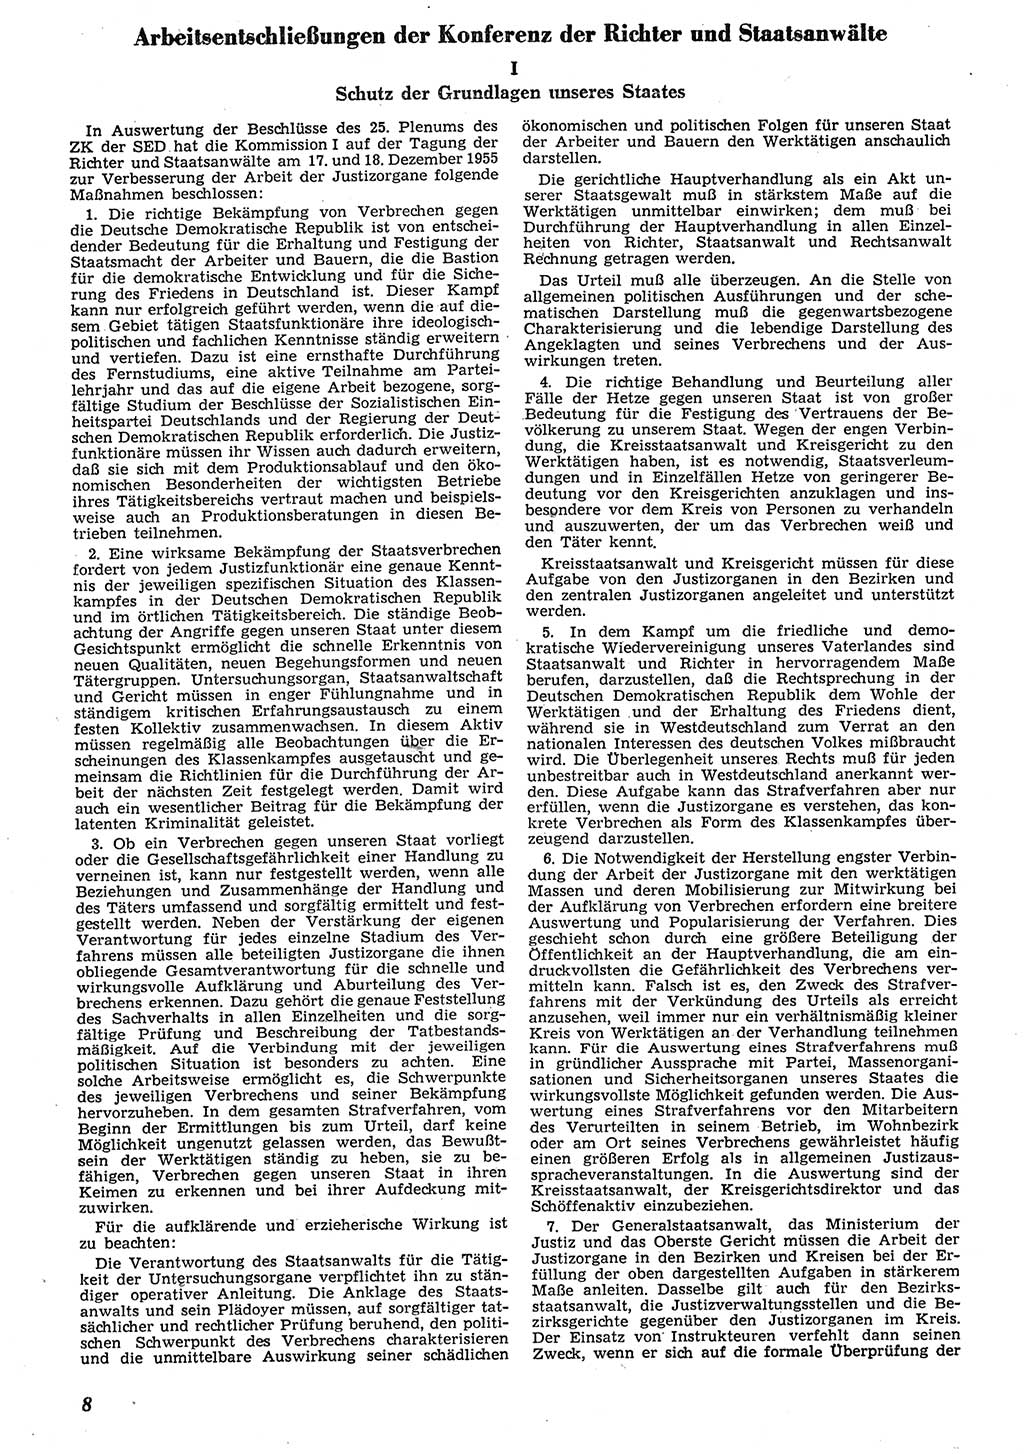 Neue Justiz (NJ), Zeitschrift für Recht und Rechtswissenschaft [Deutsche Demokratische Republik (DDR)], 10. Jahrgang 1956, Seite 8 (NJ DDR 1956, S. 8)